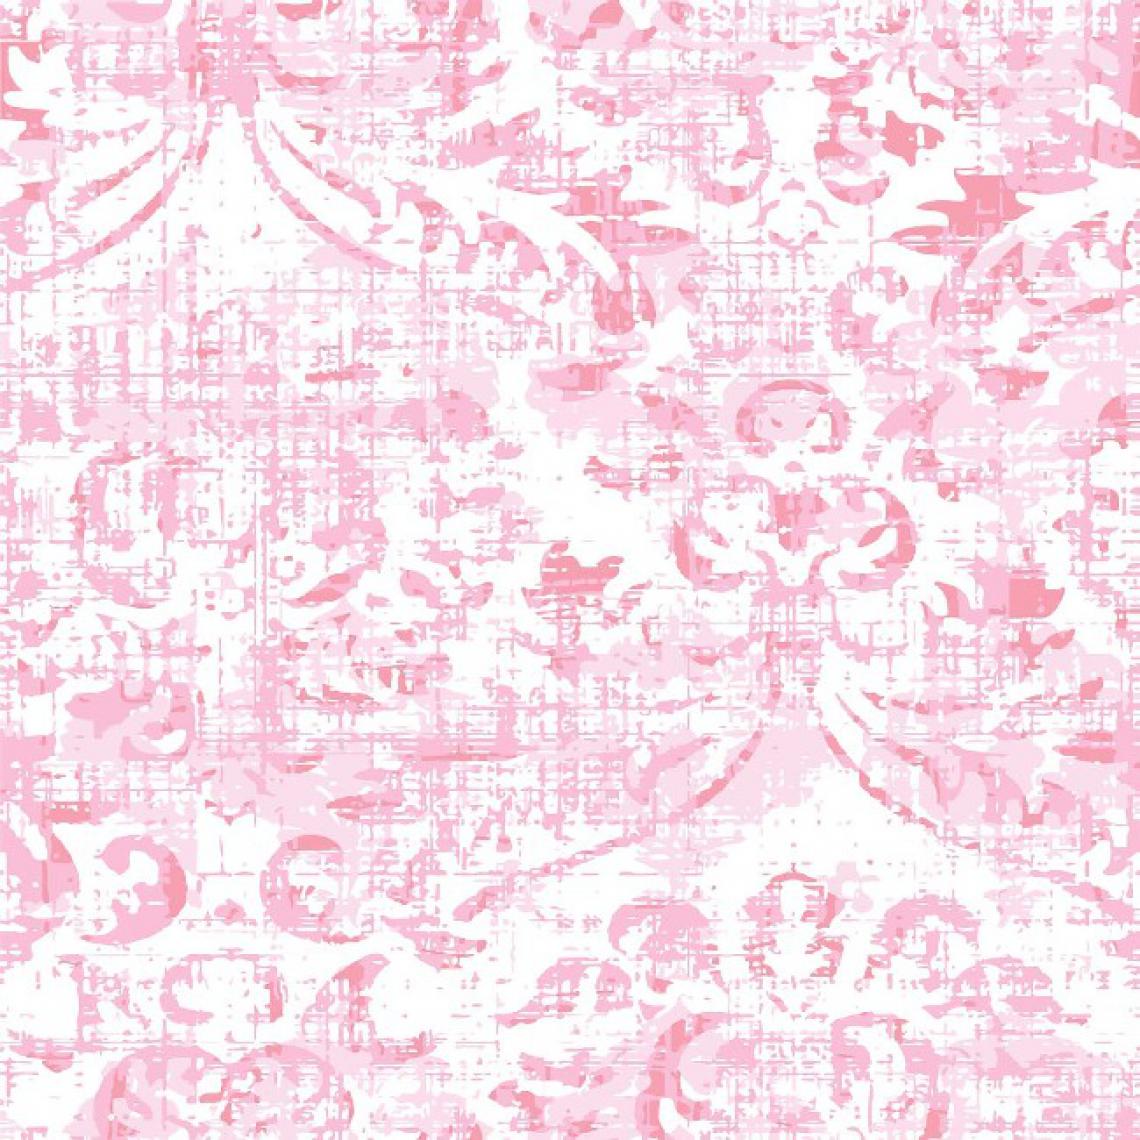 Homemania - HOMEMANIA Tapis Imprimé Pink Of Happiness - Résumé - Décoration de Maison - antidérapants - Pour Salon, séjour, chambre à coucher - Multicolore en Polyester, Coton, 80 x 50 cm - Tapis